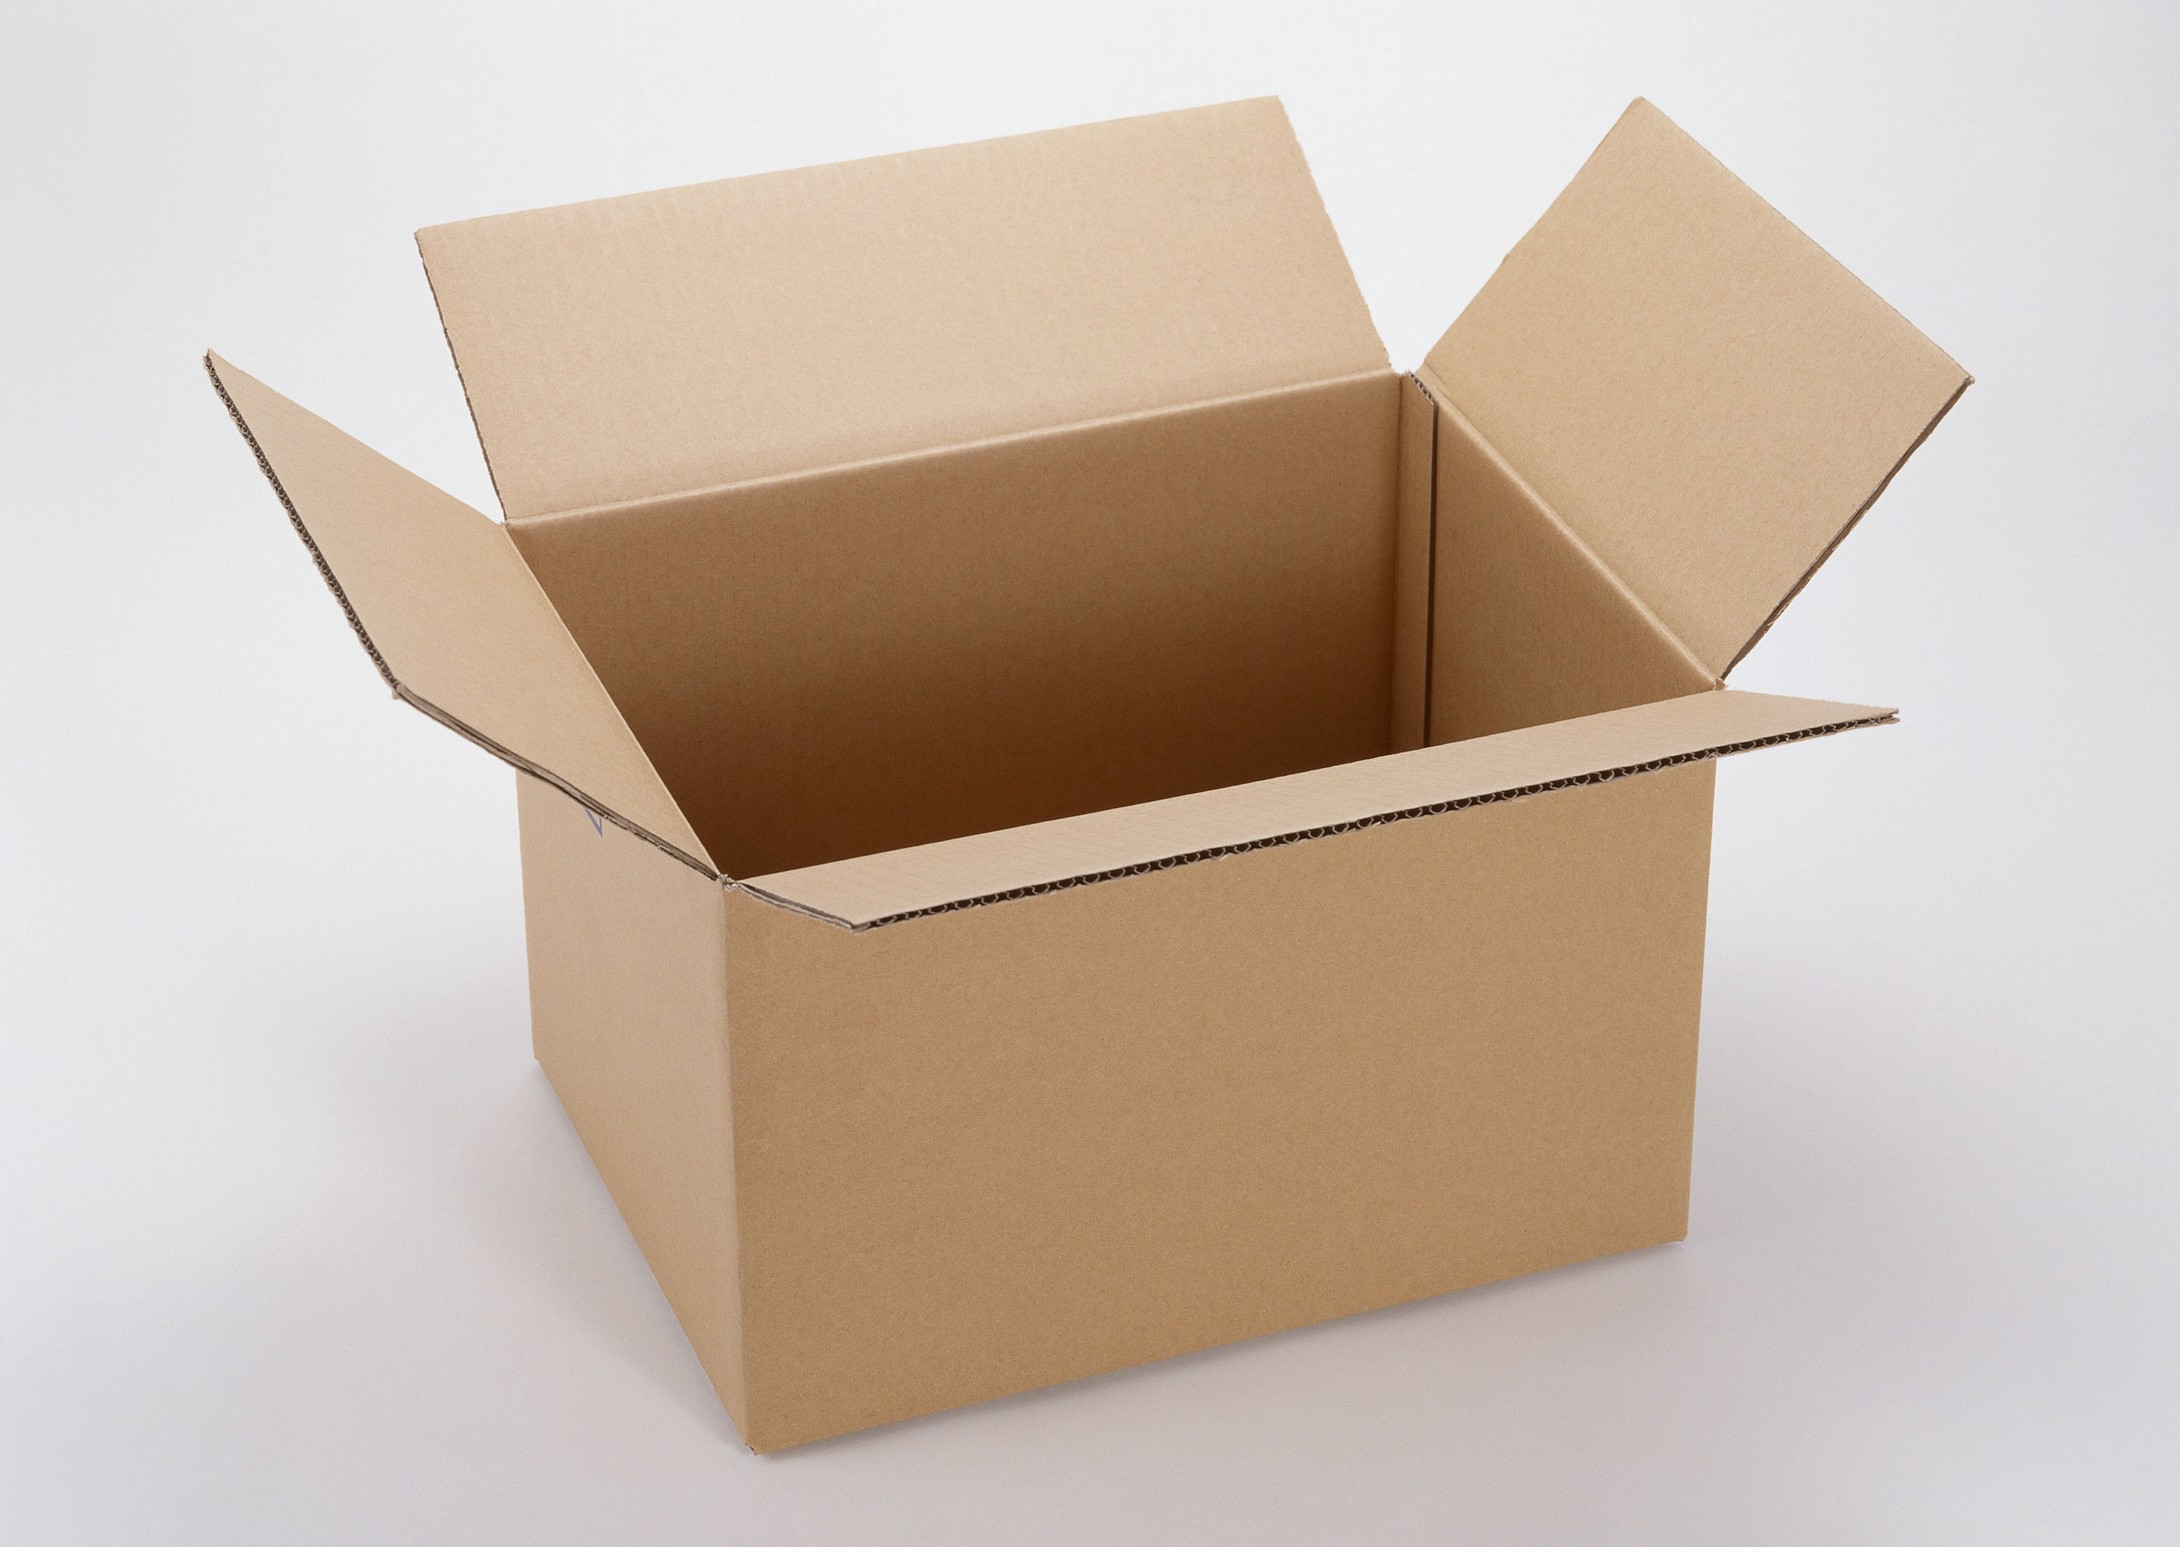 单县纸箱厂生产窗纱类包装纸箱、纸盒 客户自定义尺寸），免费印刷 可私人订制，可批量生产